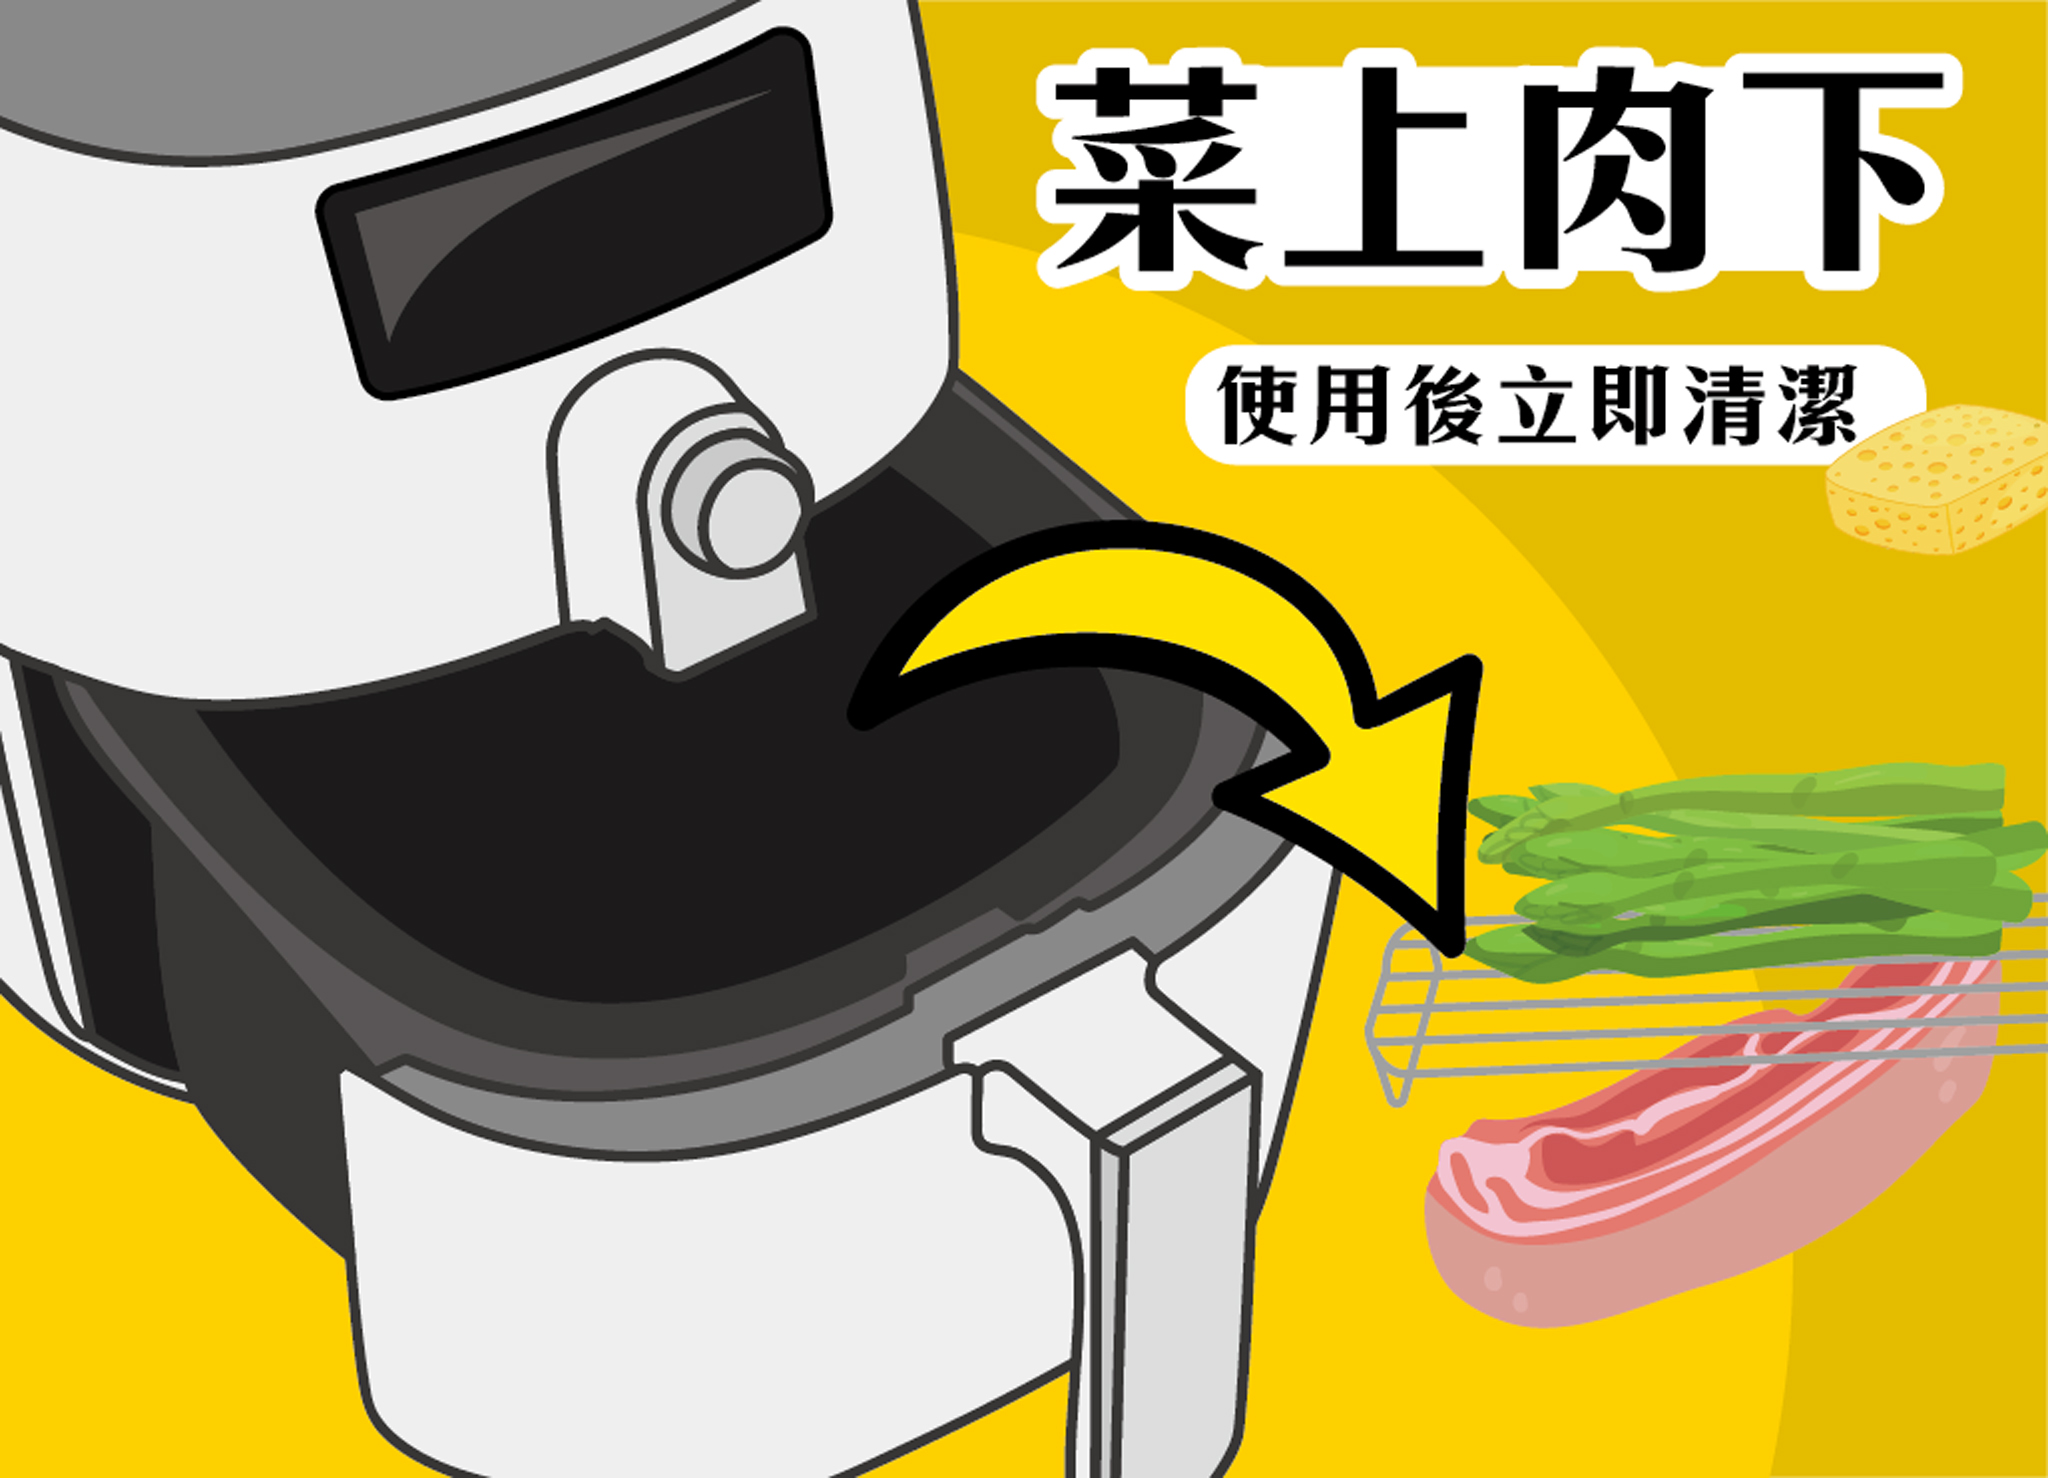 使用氣炸鍋需注意菜上、肉下分層，並在使用後立即清潔。